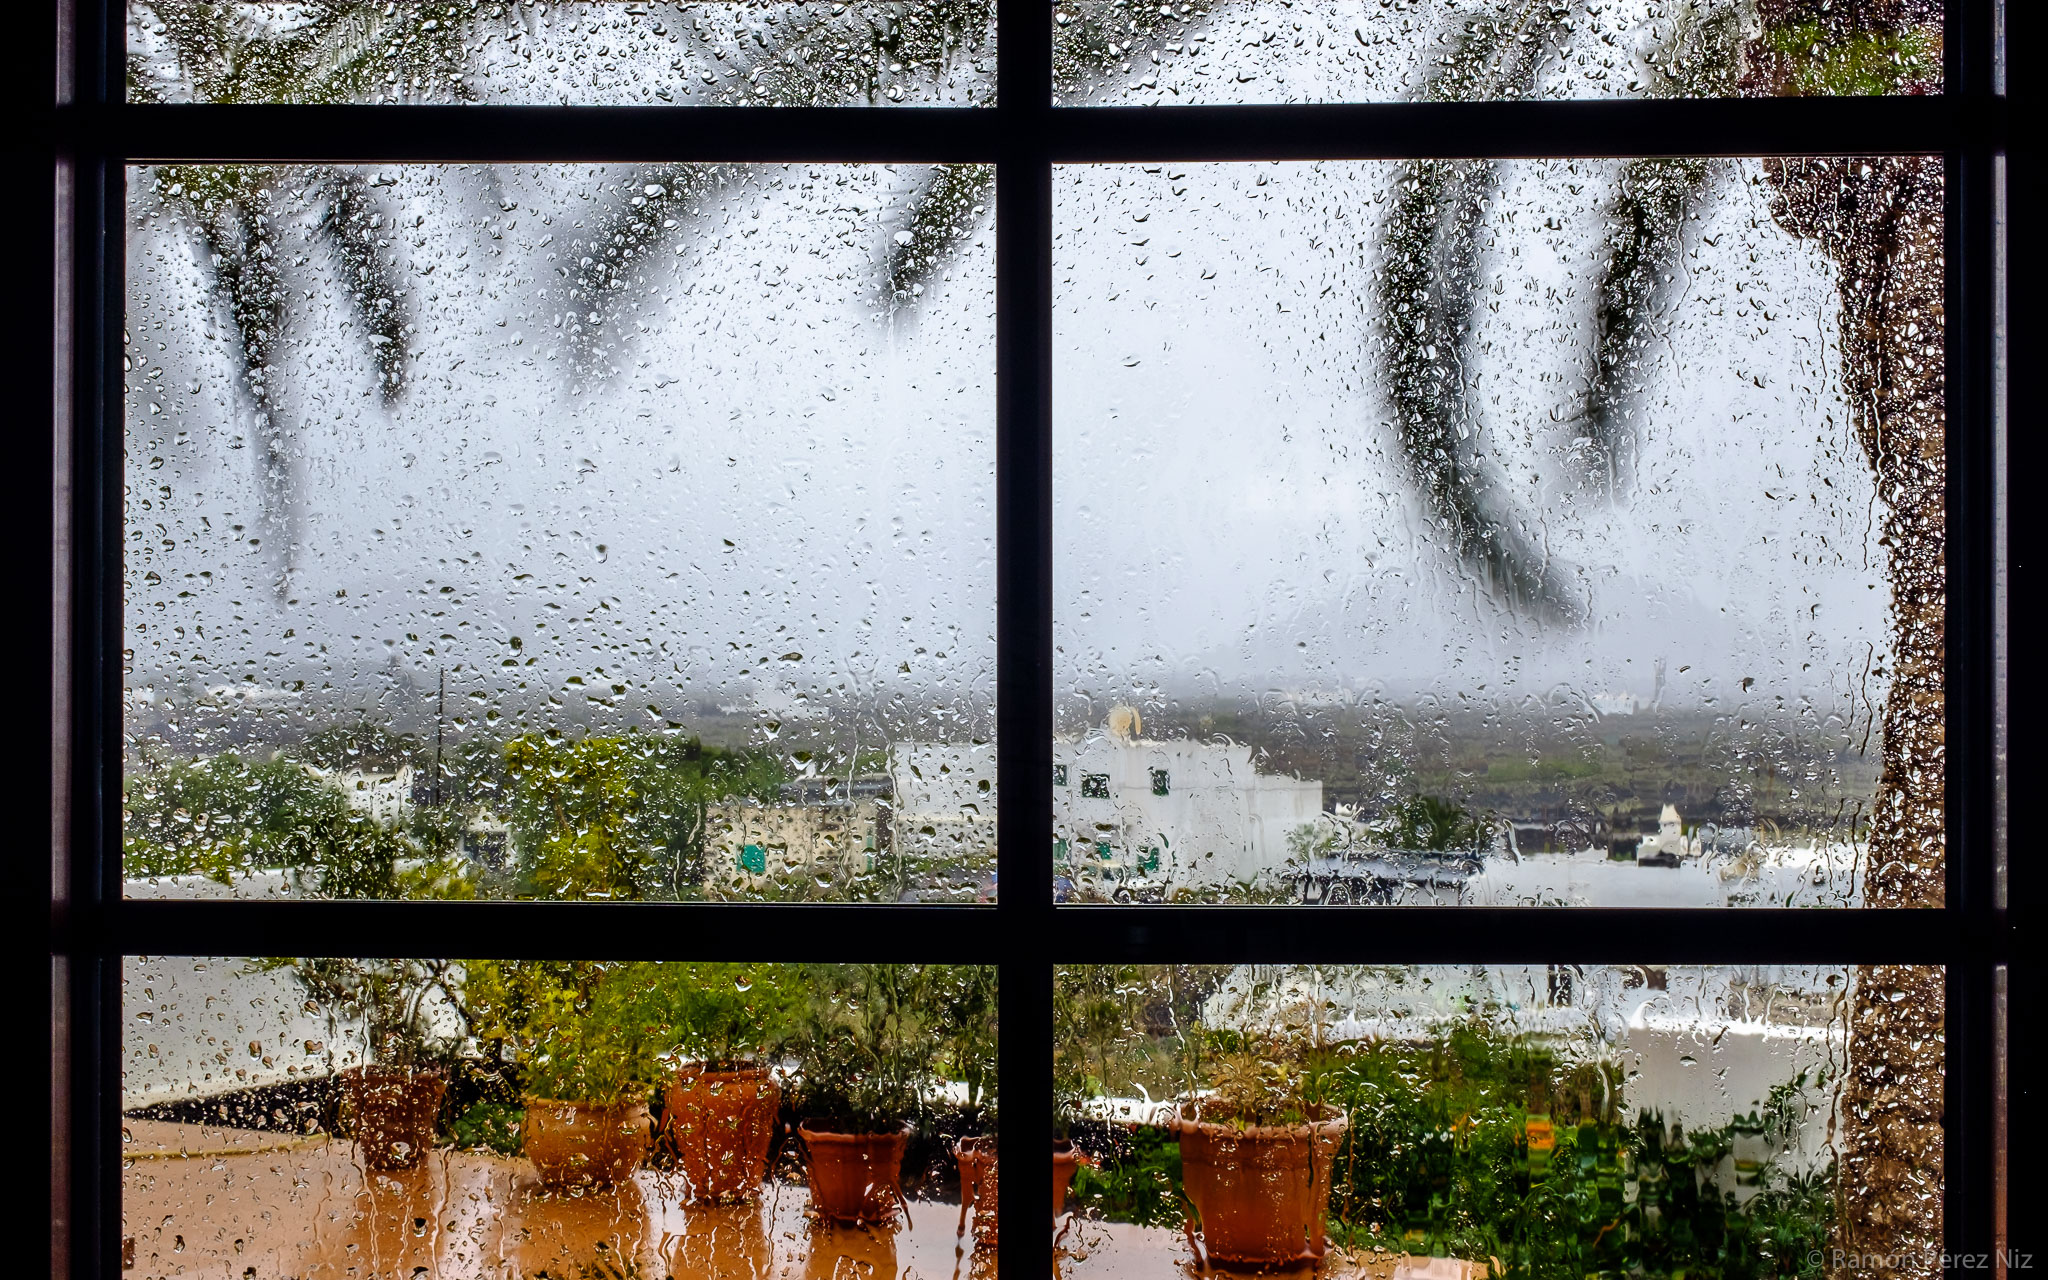 Foto de Ramón Pérez Niz con lluvia y  viento